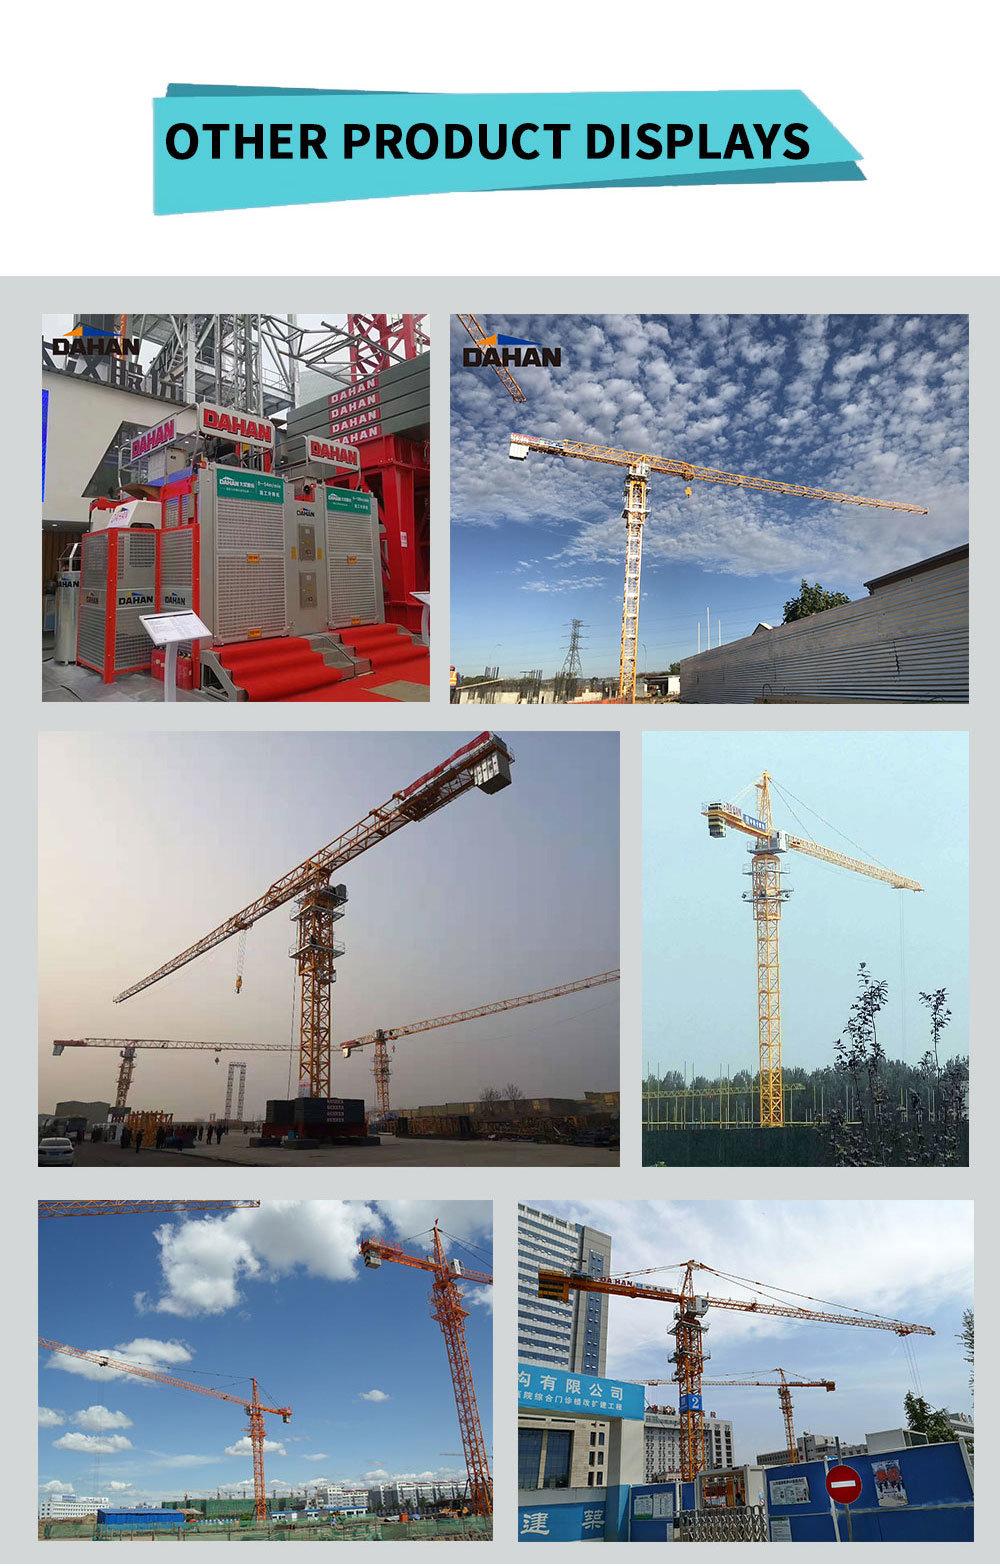 Construction Crane 10t Construction Tower Crane Construction Machinery Qtz250 Qtz50 Qtz63 Qtz80